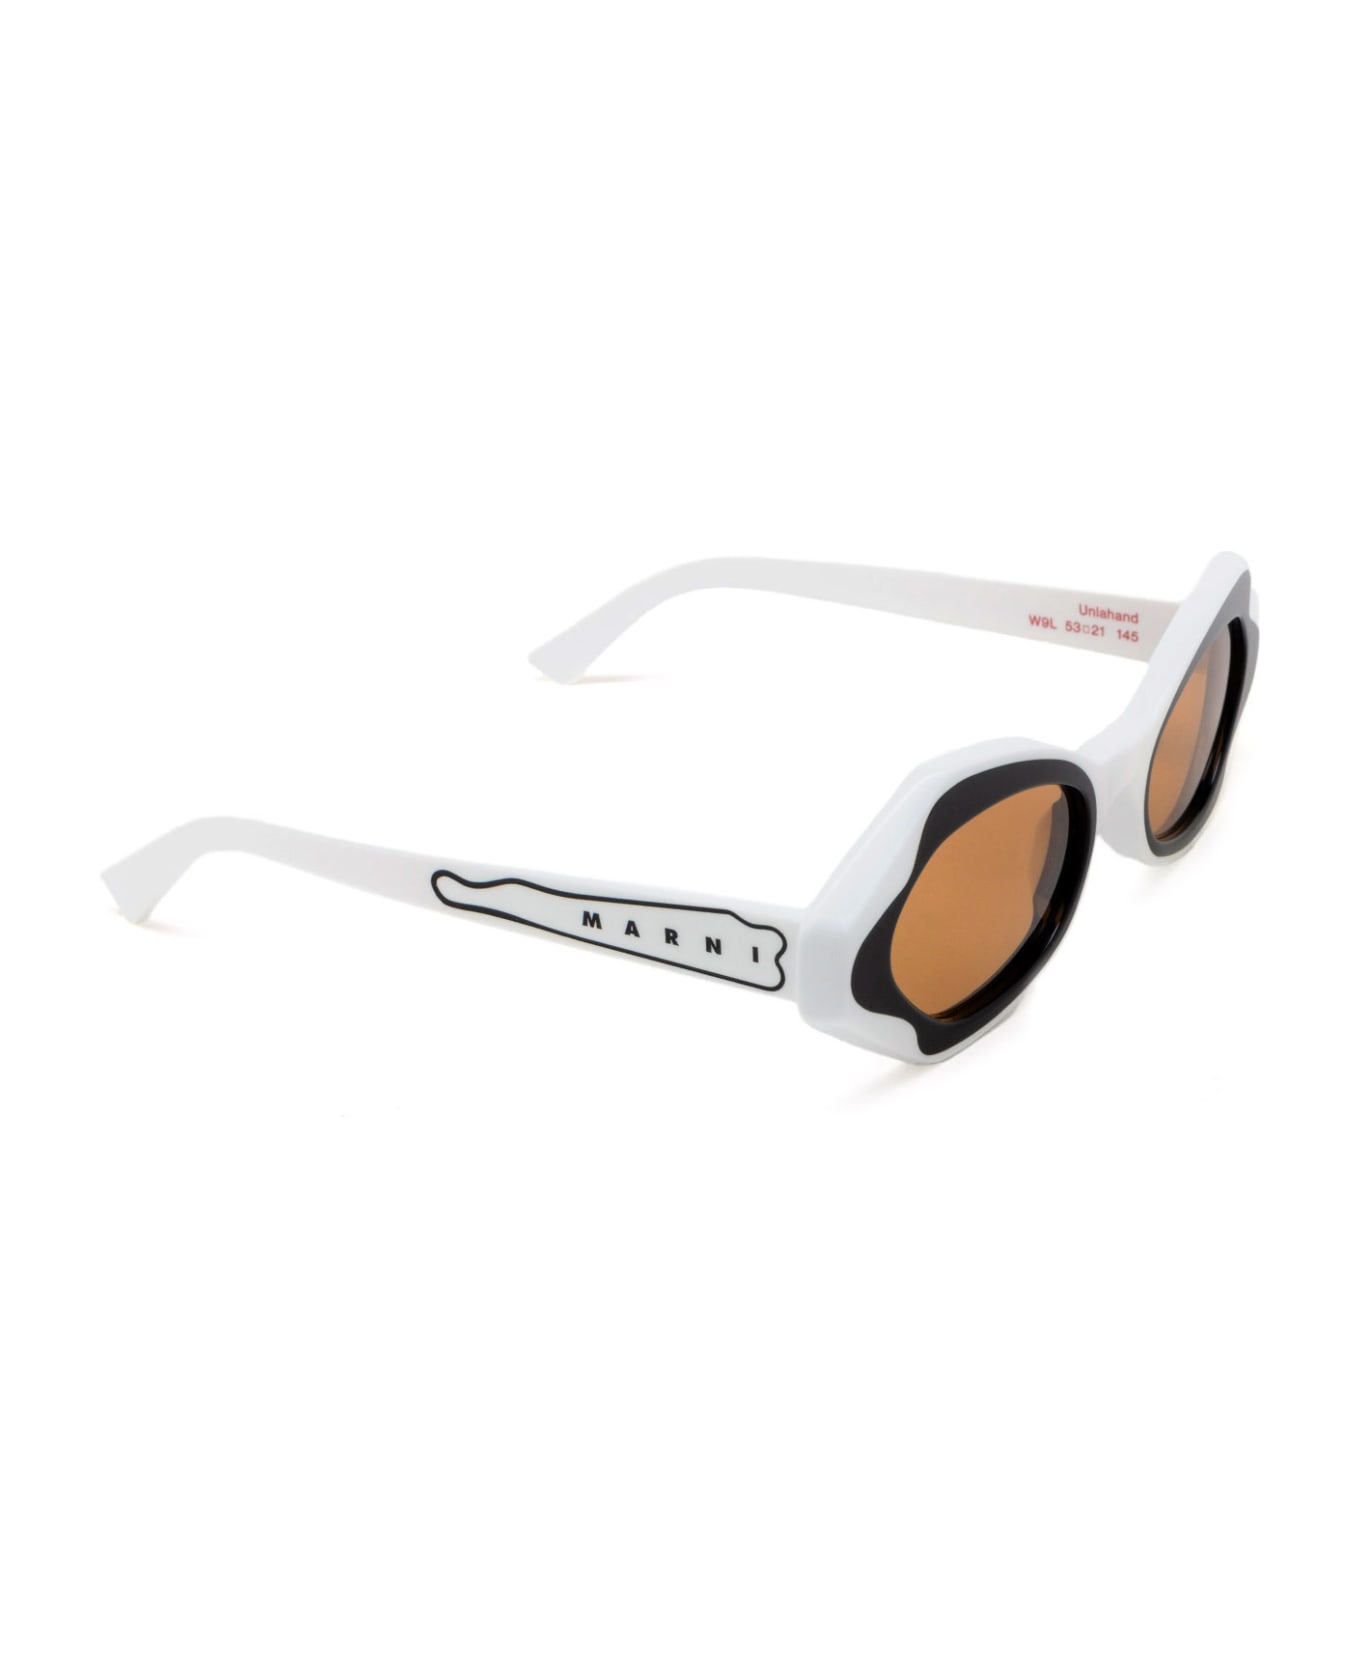 Marni Eyewear Unlahand White Sunglasses - White